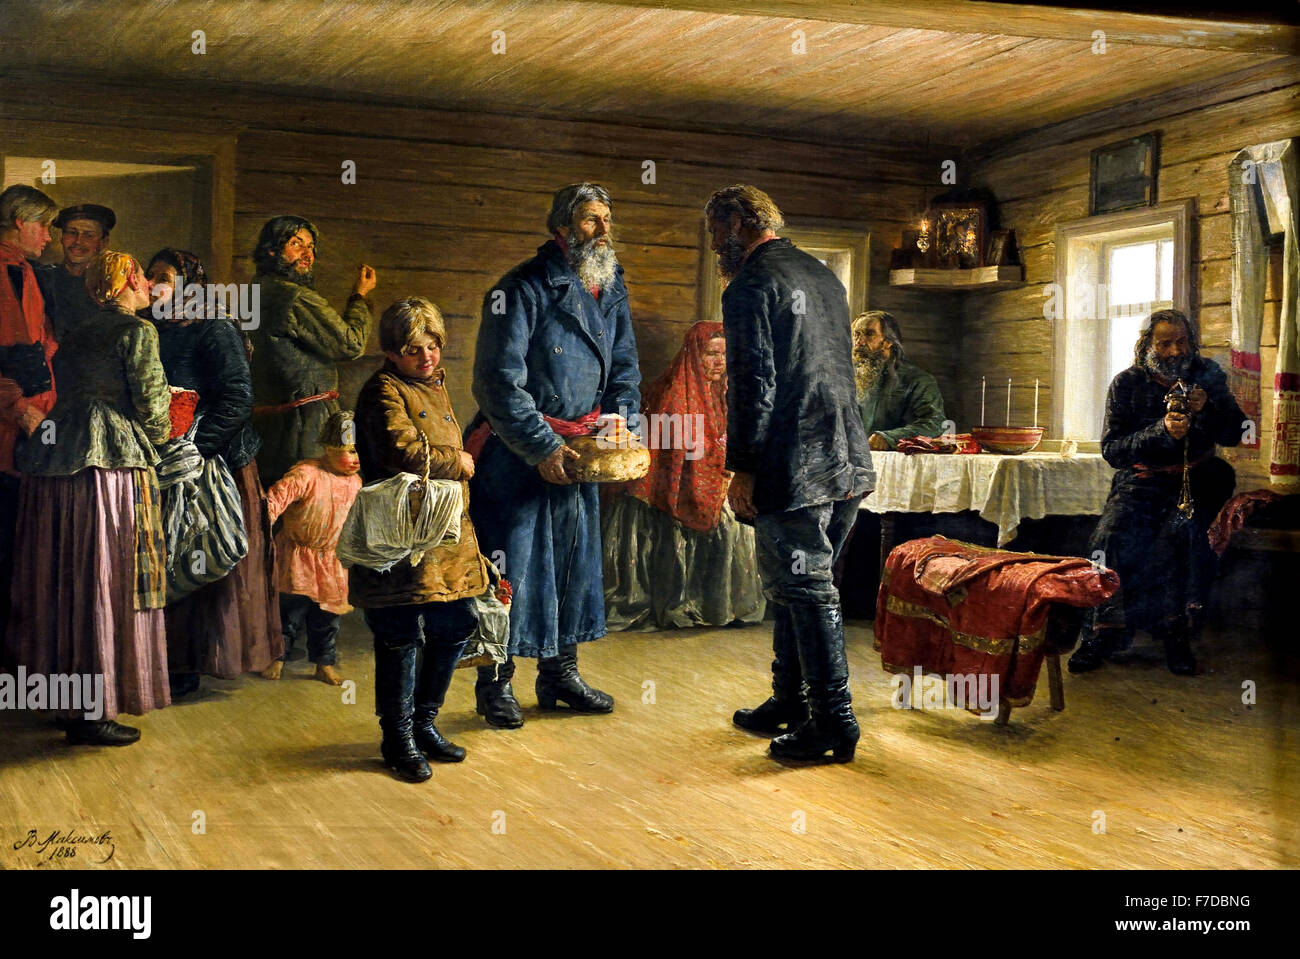 Bénédiction d'une isba neuve - bénédiction d'une nouvelle log hut 1888 Vasily Maximov Maximovitch 1844 - 1911 Fédération de Russie Banque D'Images